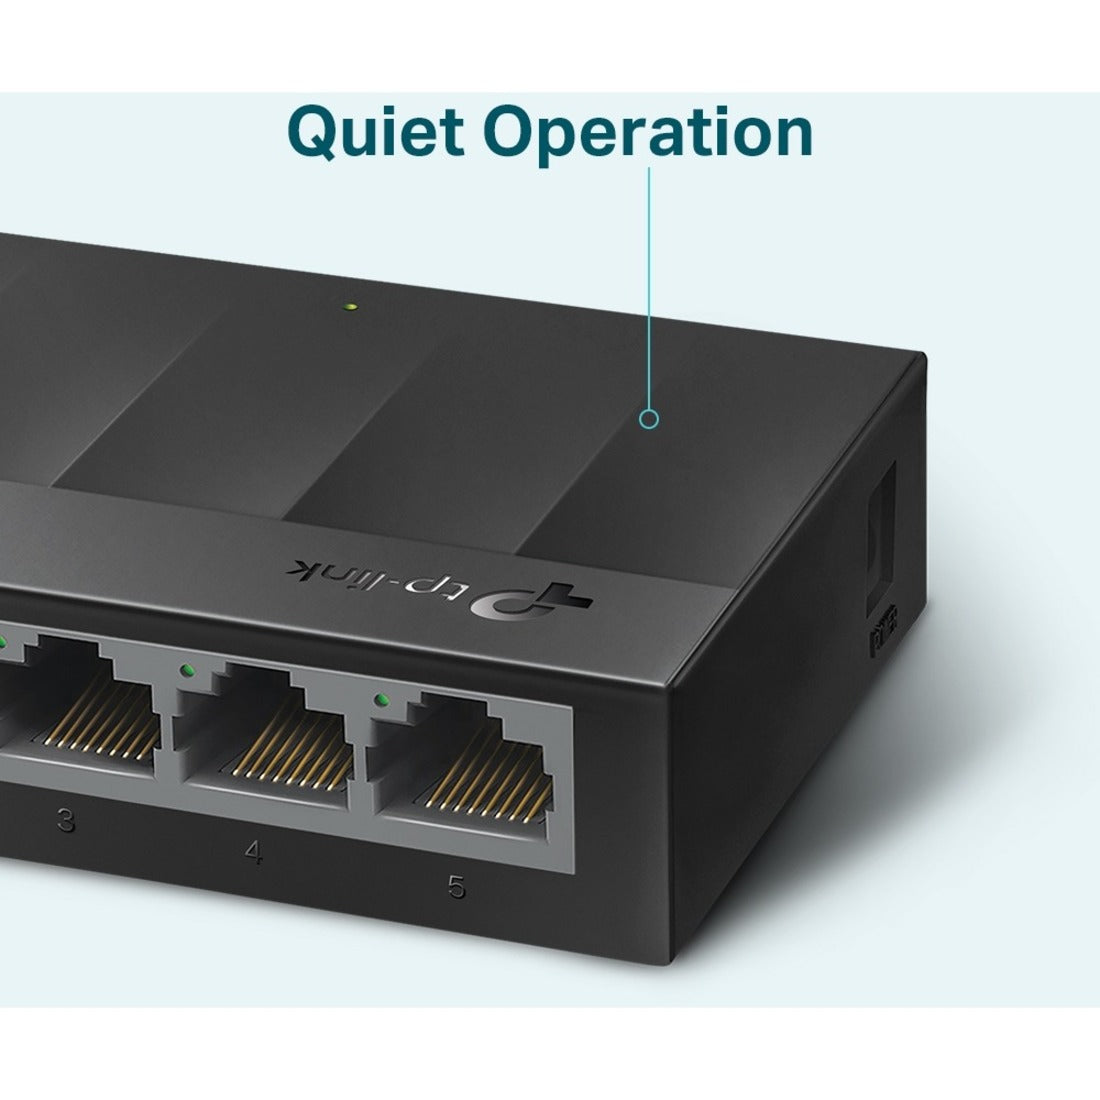 TP-Link LS1005G LiteWave 5-Port Gigabit Ethernet Switch Schnelle und zuverlässige Netzwerkverbindung